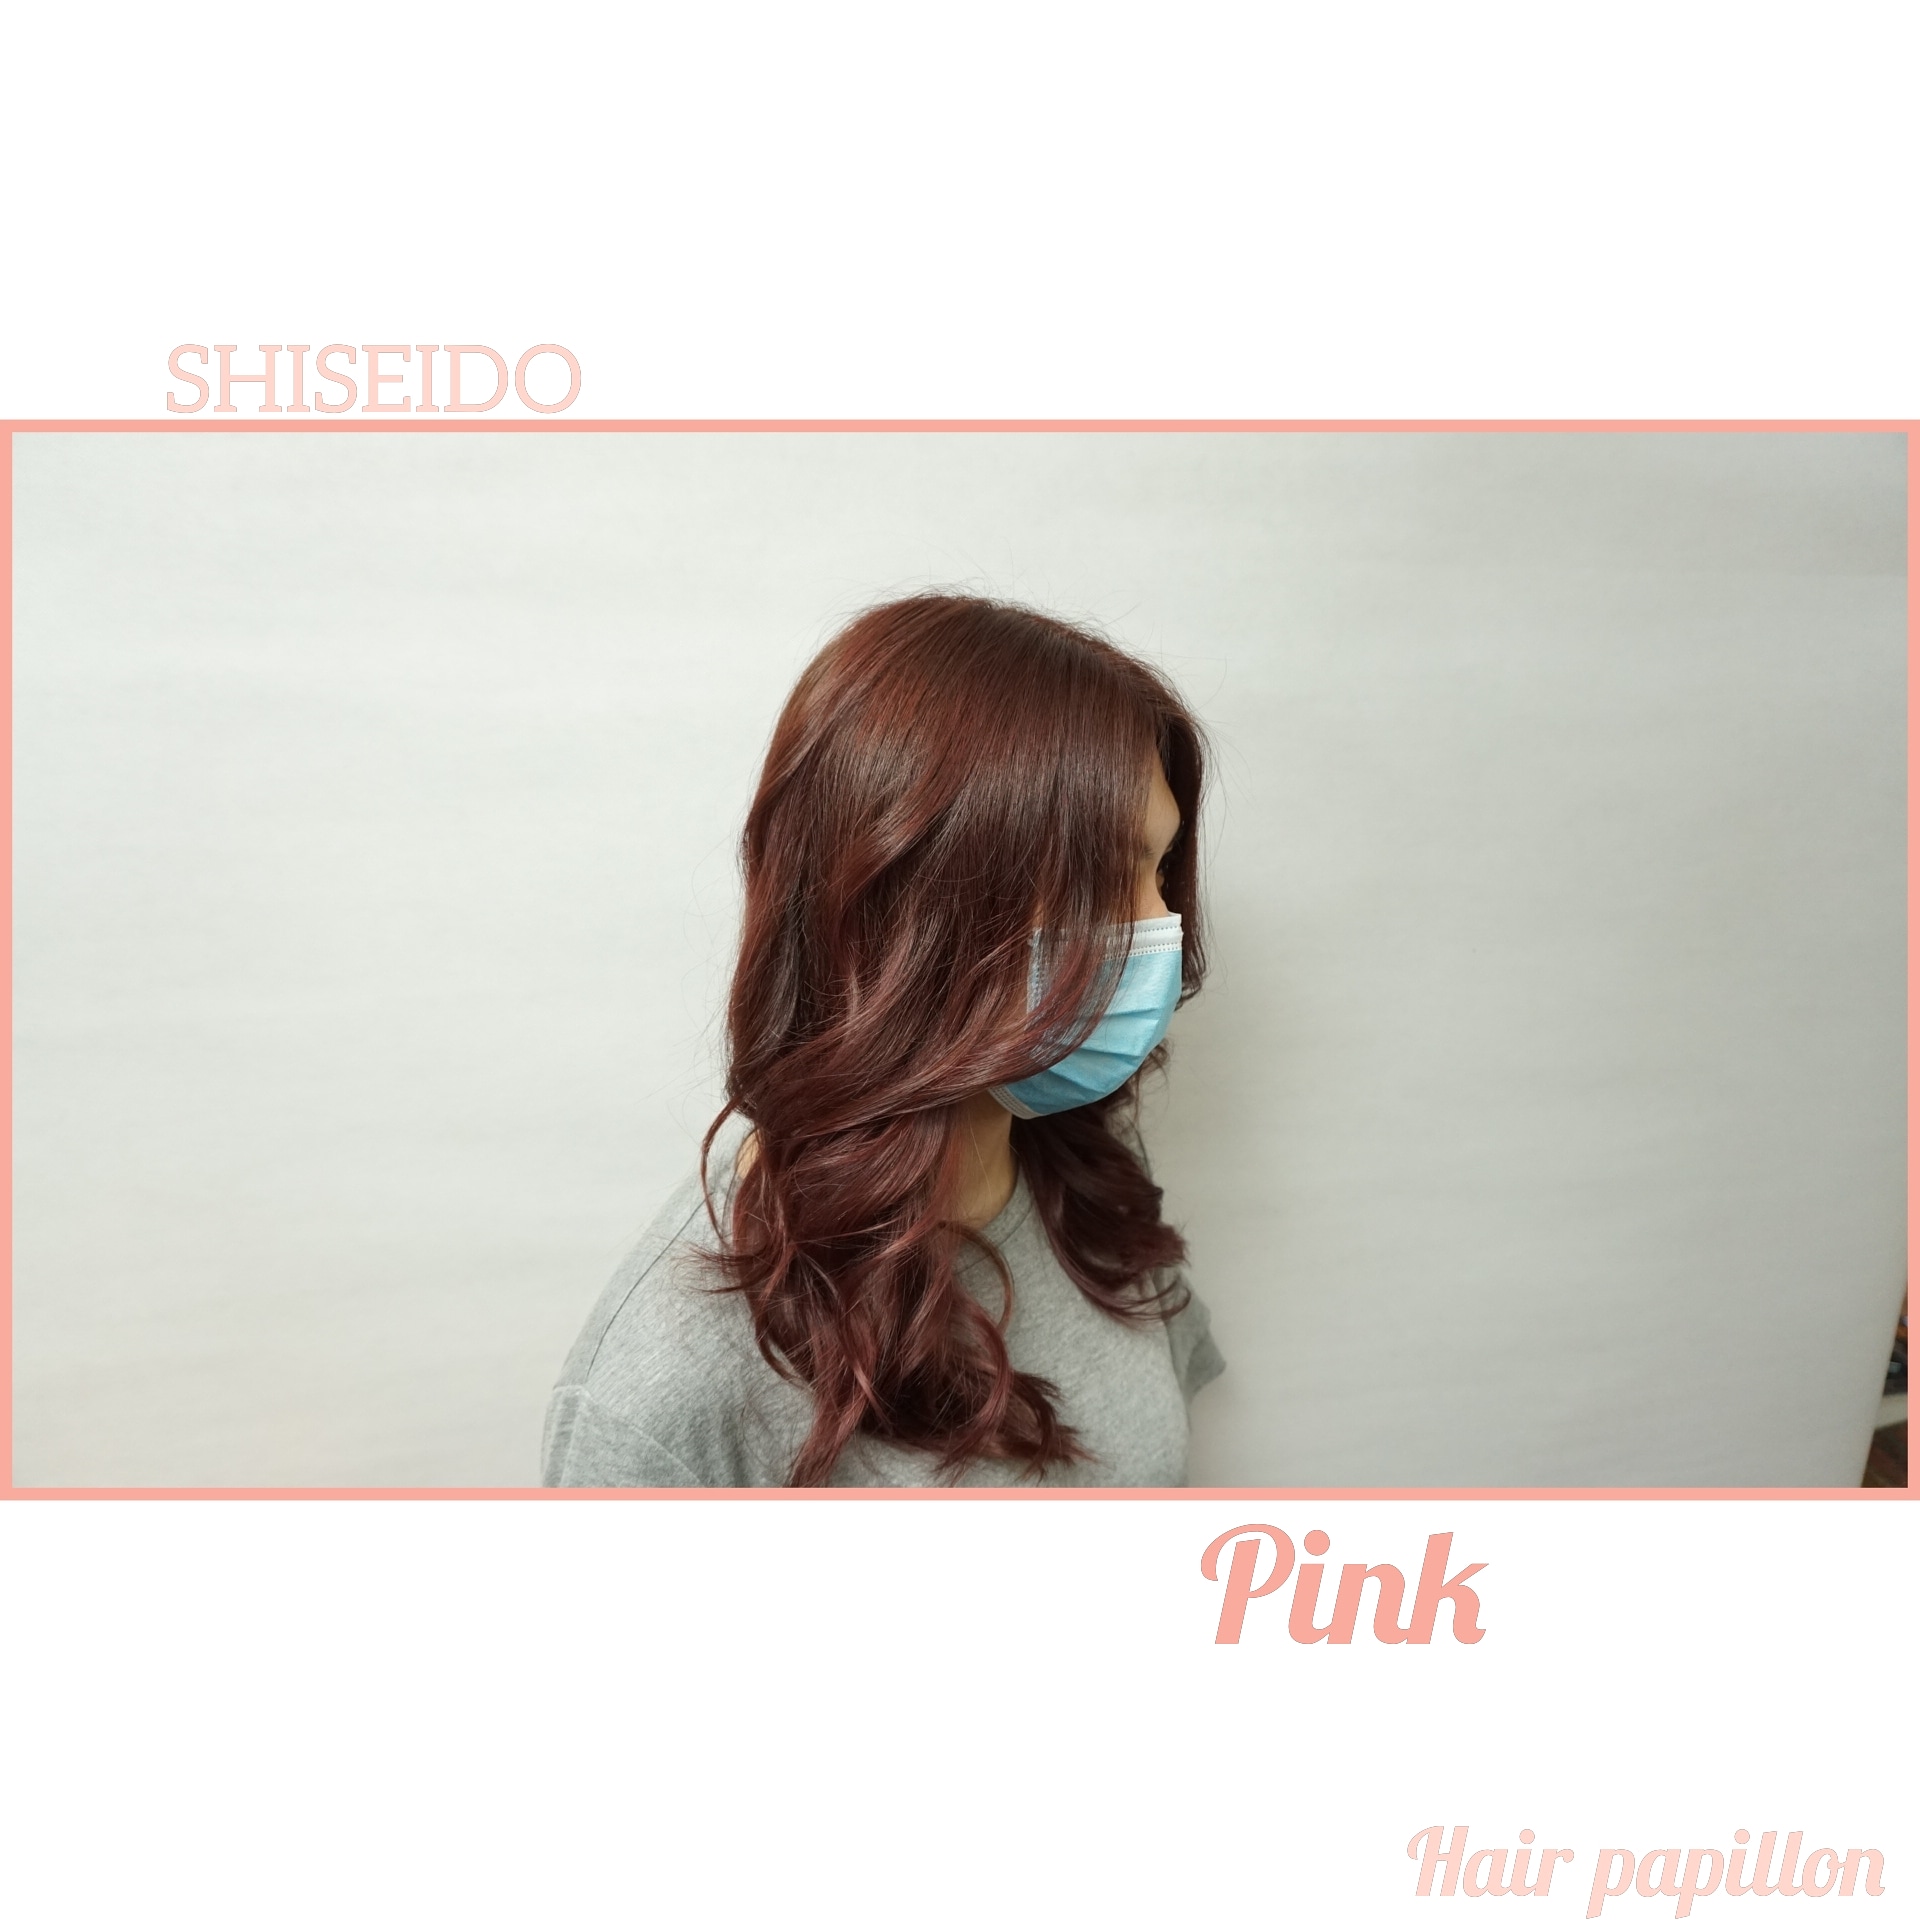 髮型作品參考:shiseido color